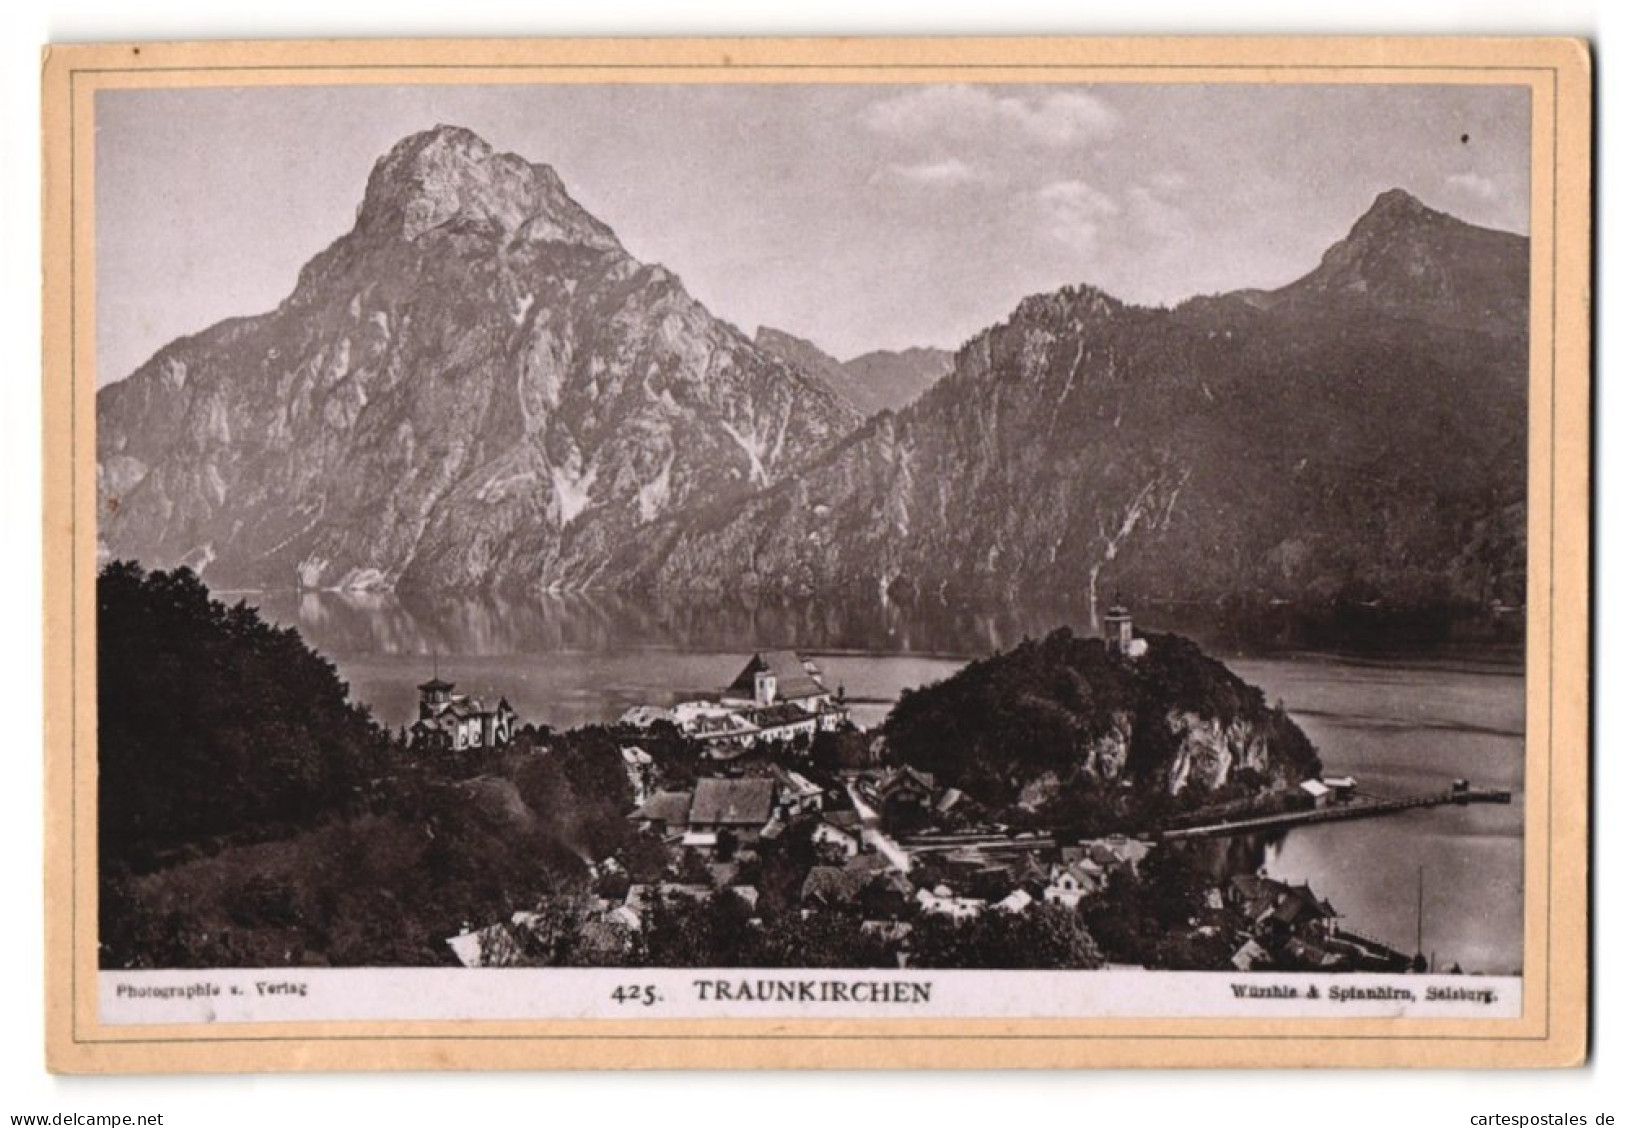 Fotografie Würthle & Spinnhirn, Salzburg, Ansicht Traunkirchen, Blick Auf Den Ort Mit Alpen  - Lieux